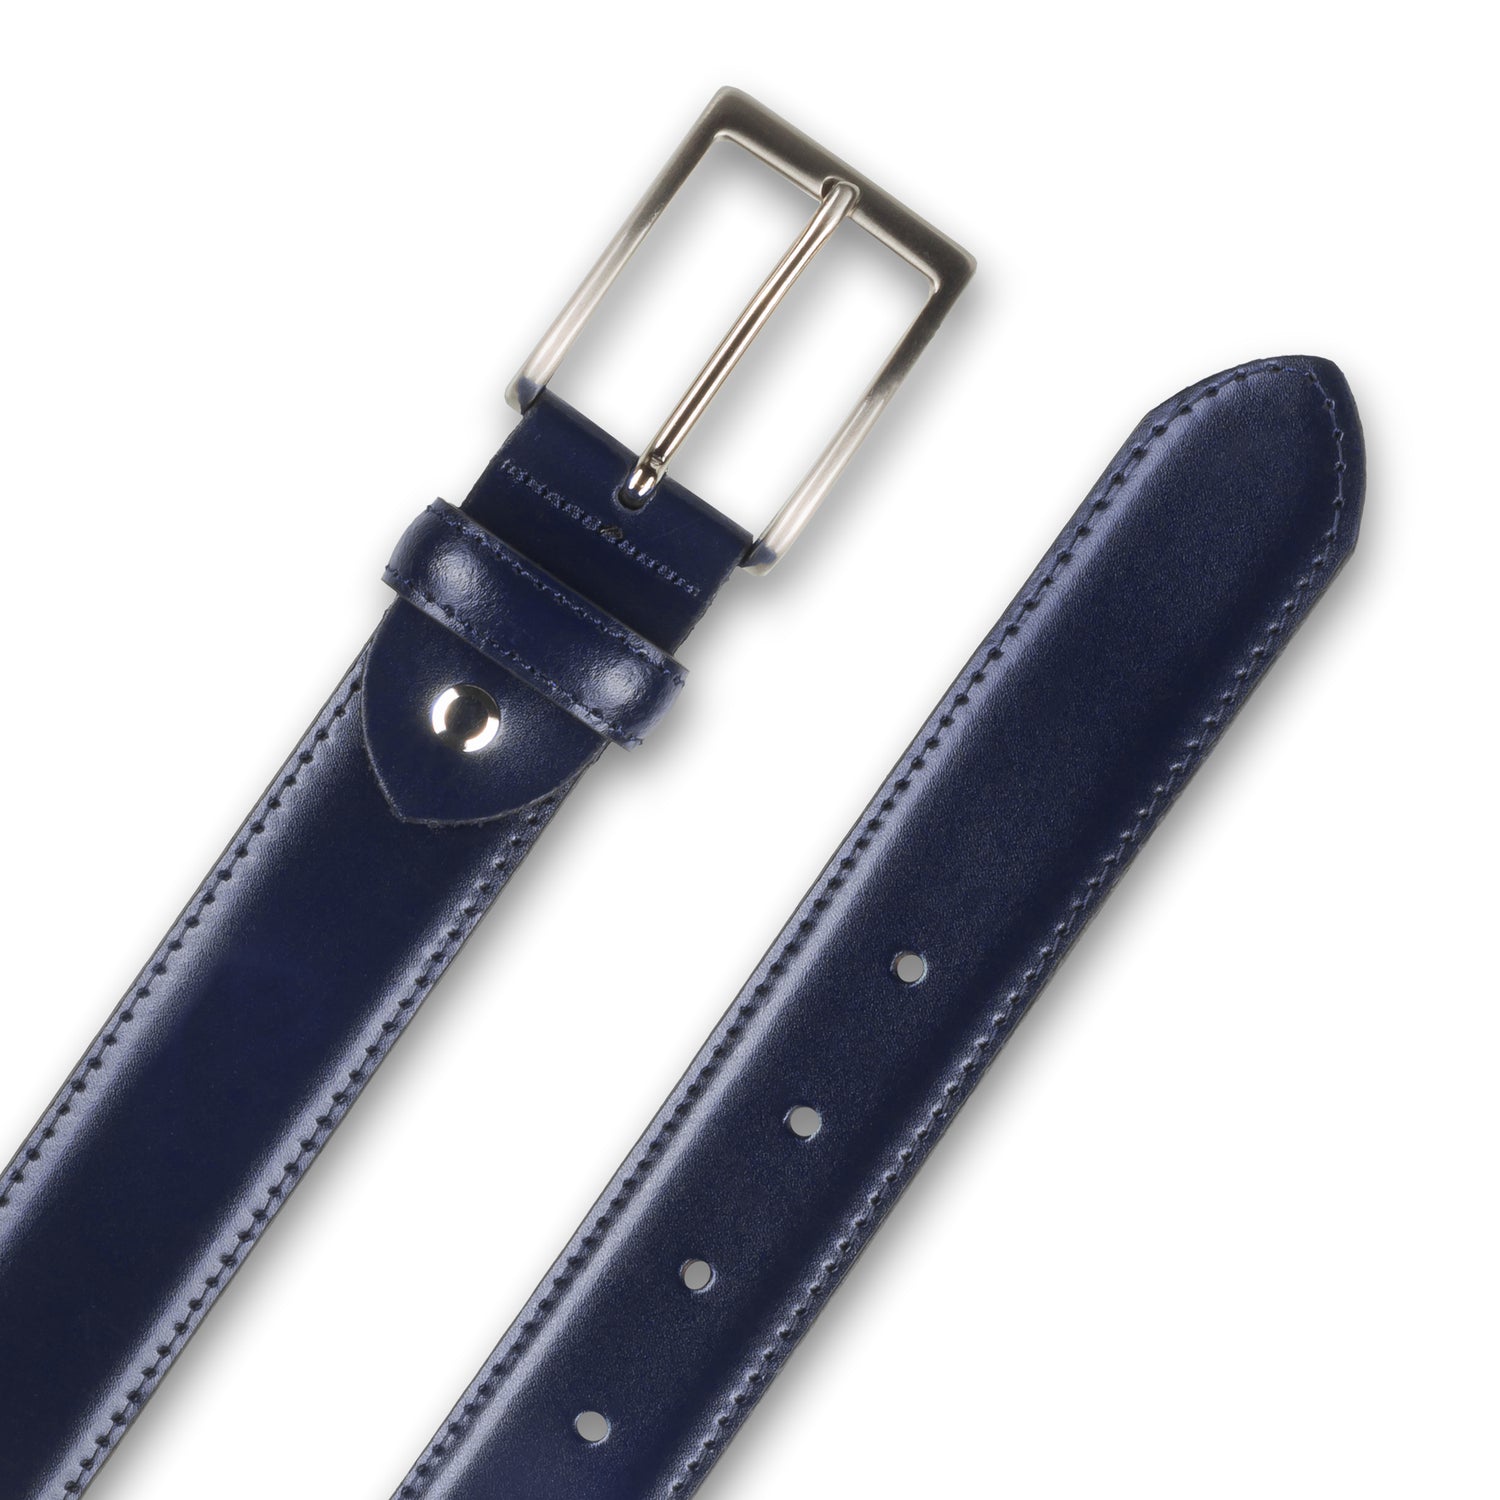 Ledergürtel / Anzuggürtel dunkel blau 3,5 cm breit